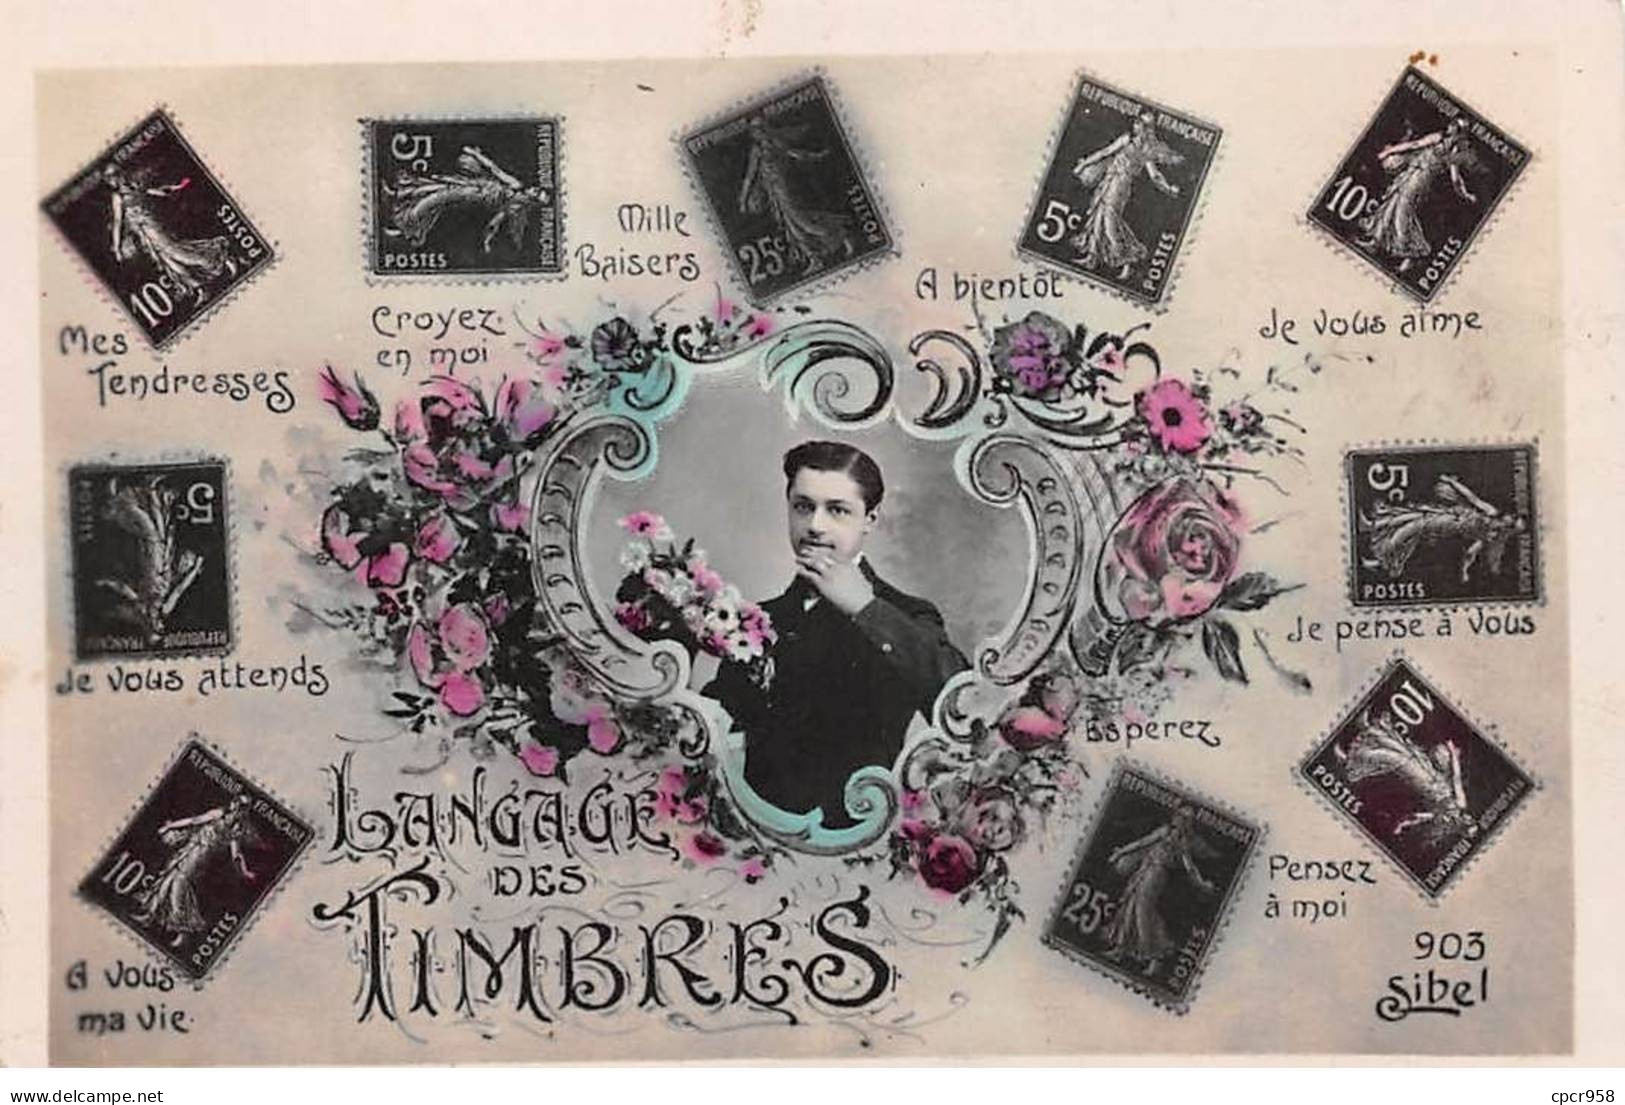 Représentations Timbres - N°87846 - Langage Des Timbres - Mes Tendresses, Croyez En Moi - Homme, Et Fleurs - Stamps (pictures)